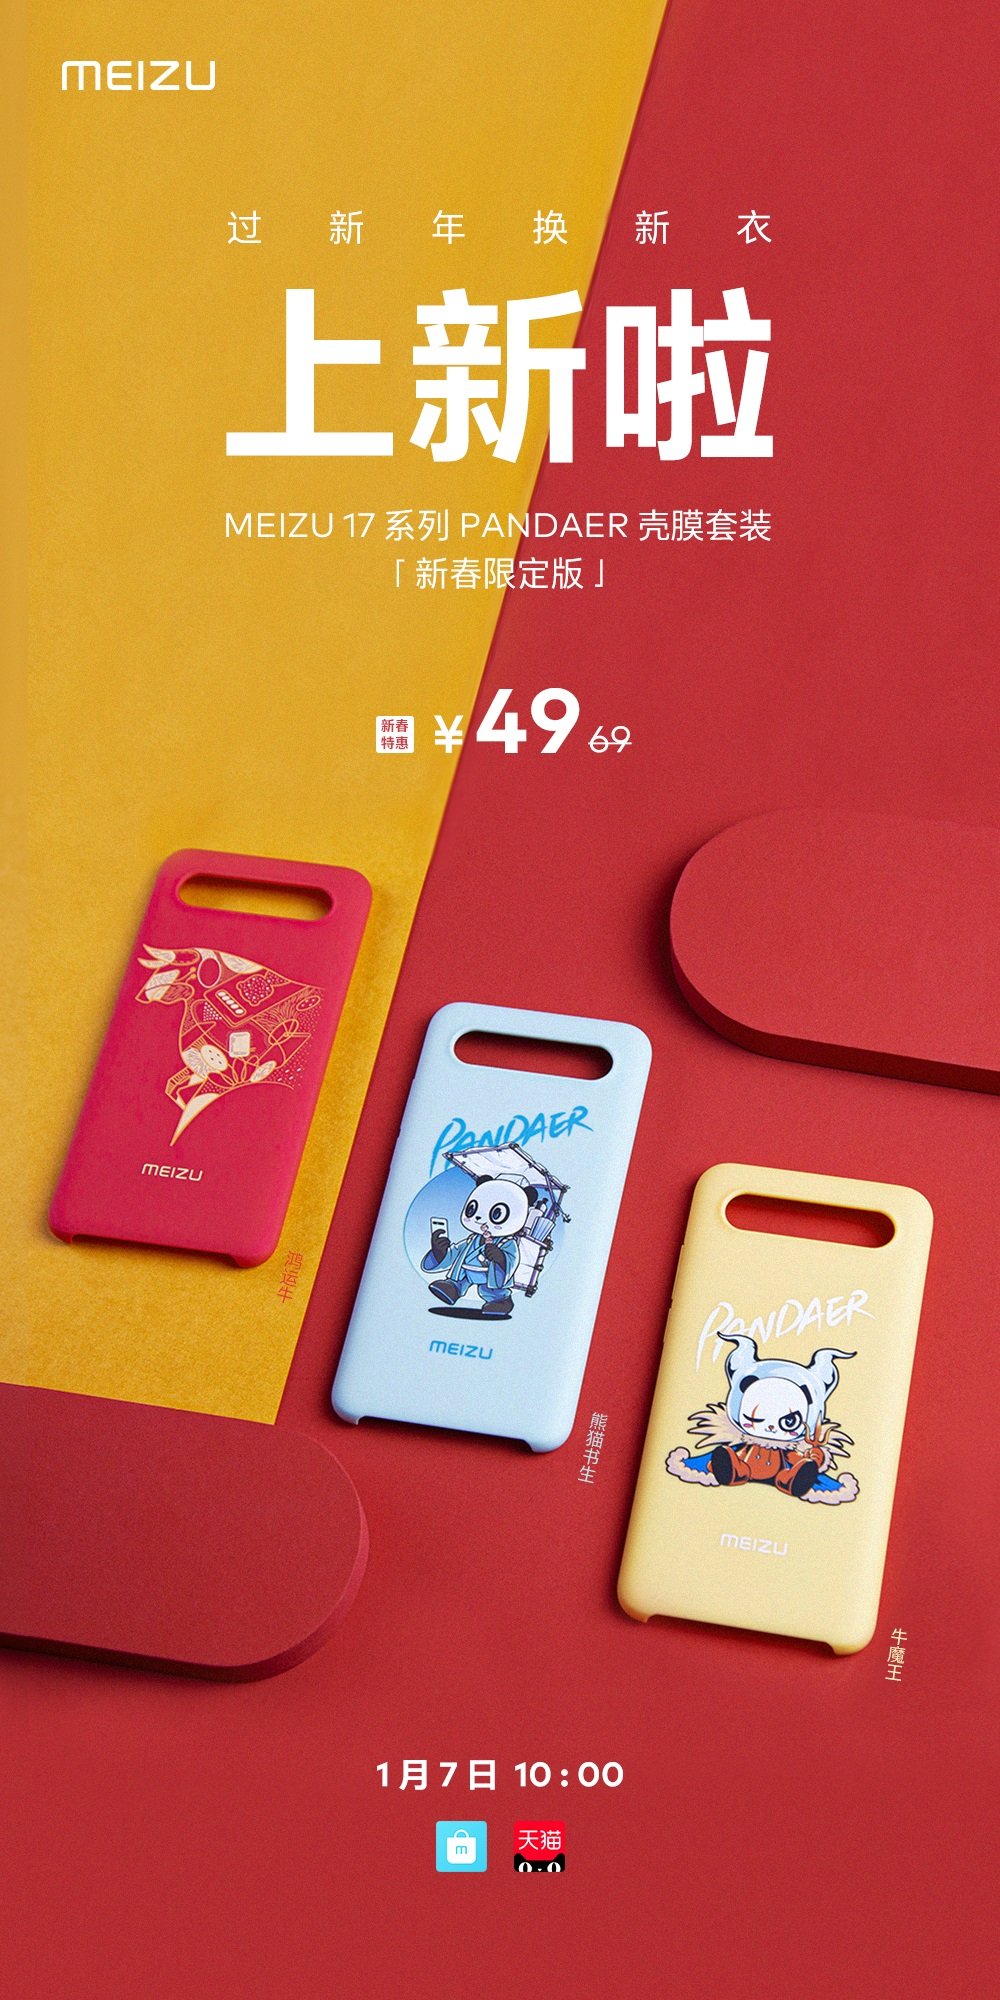 Meizu 17 PANDAER nieuwjaarseditie achterkant van de behuizing